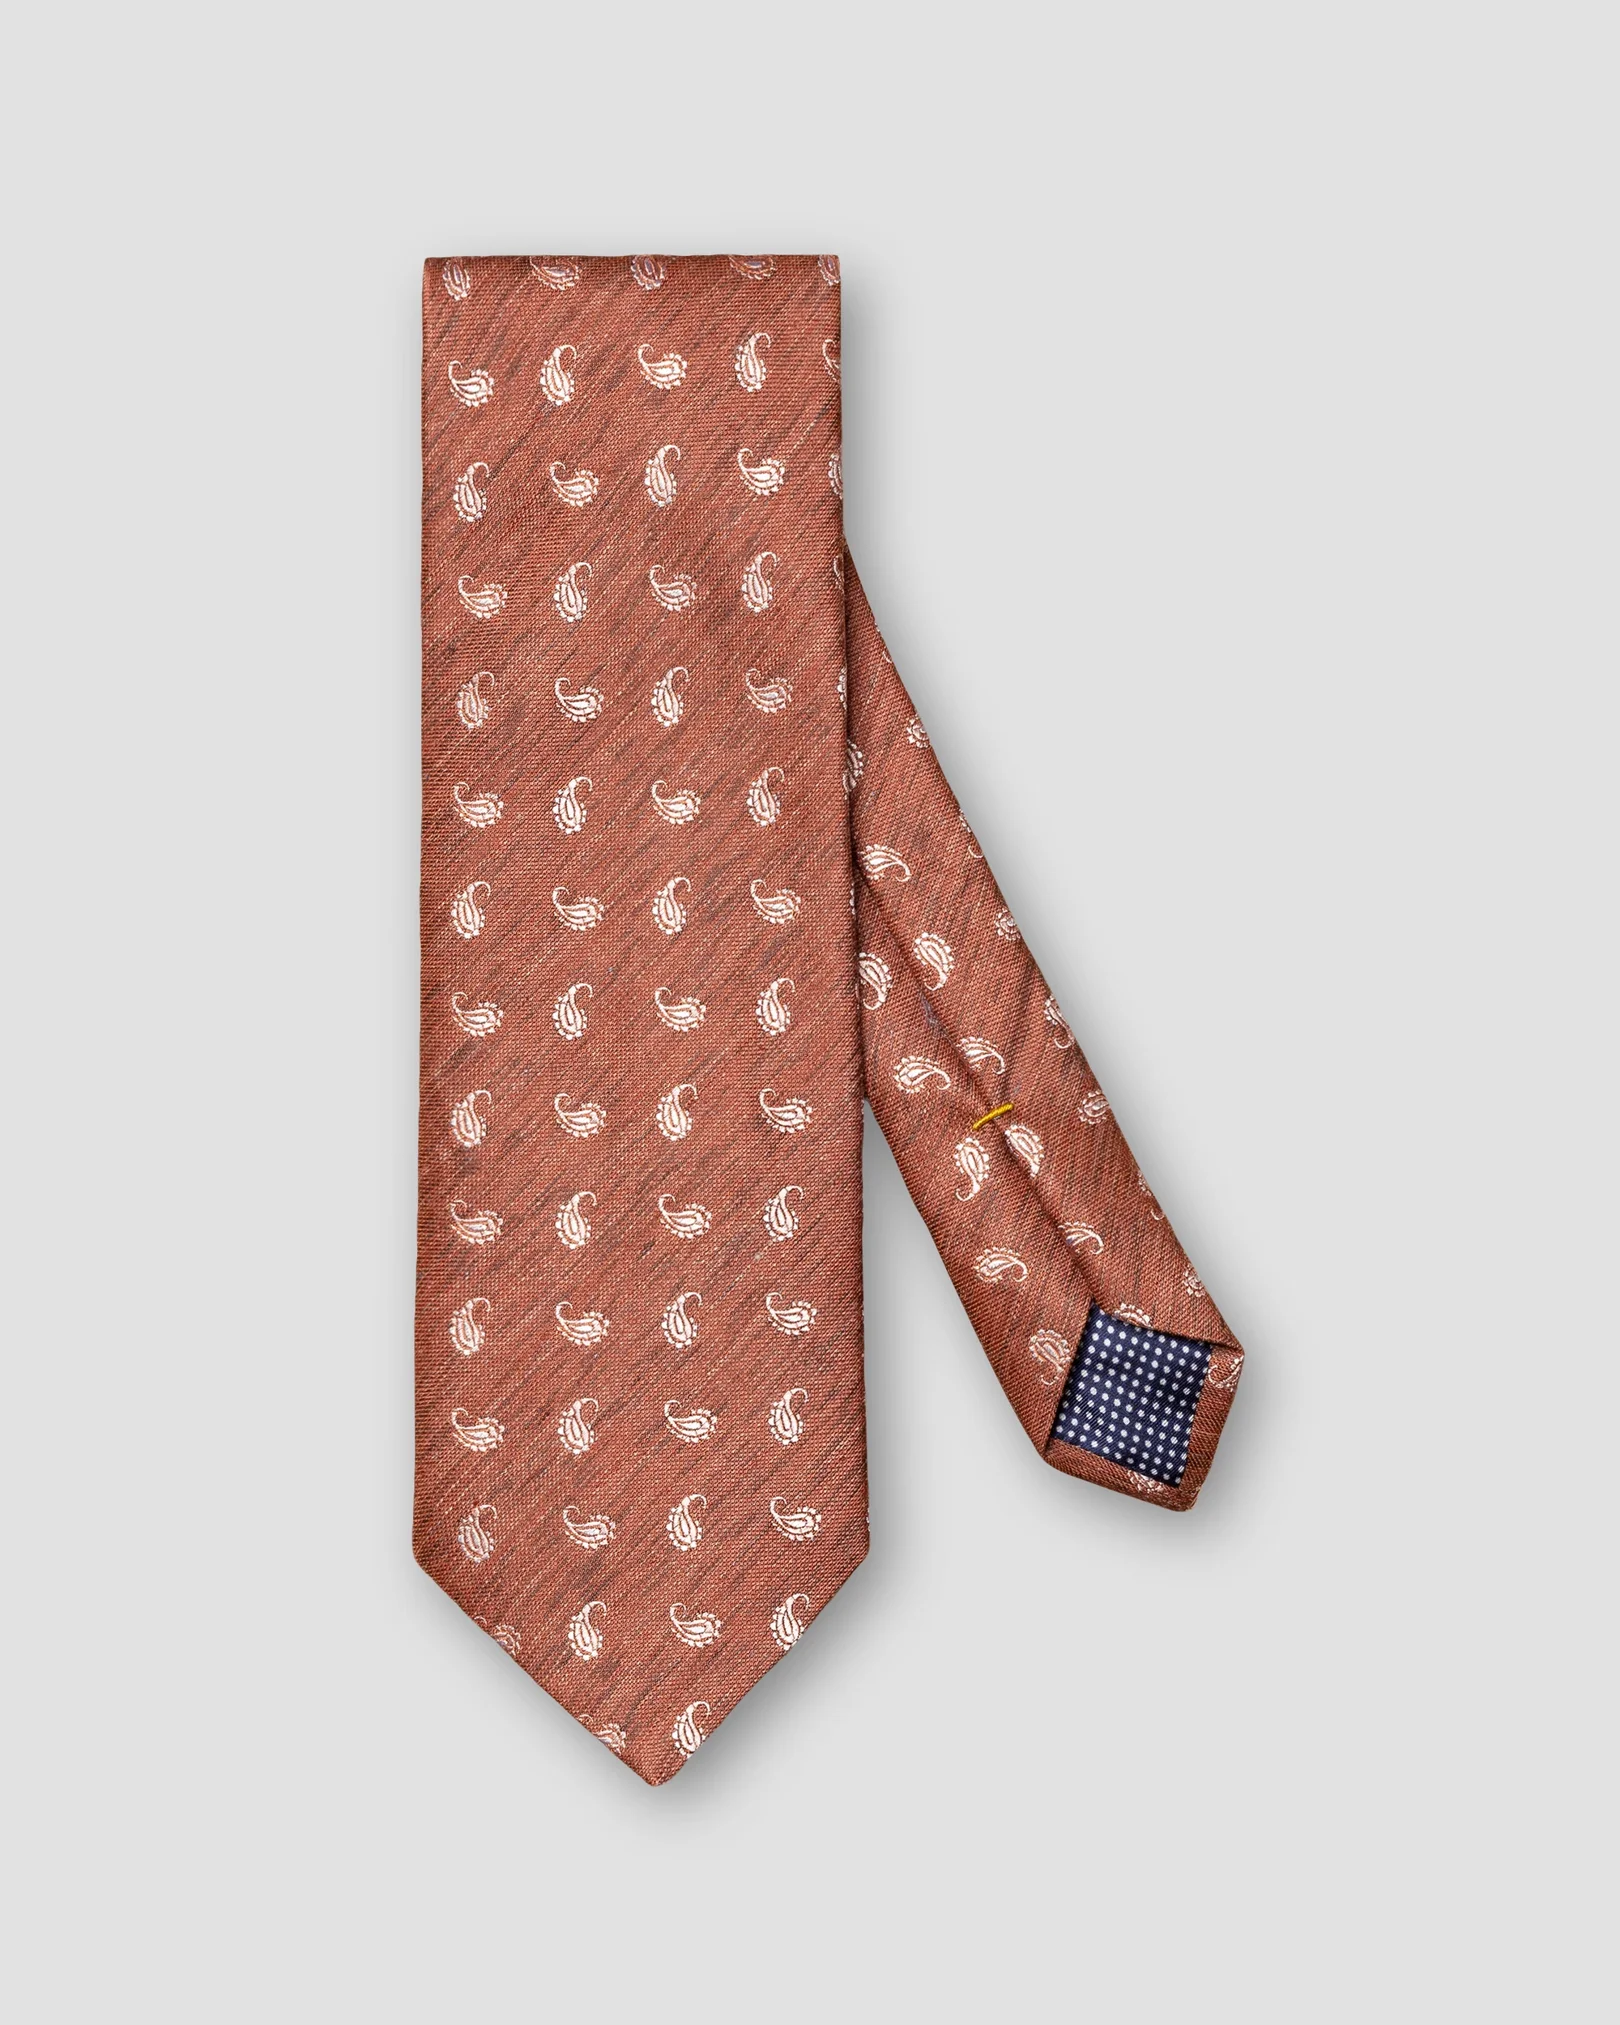 Eton - dark orange tie